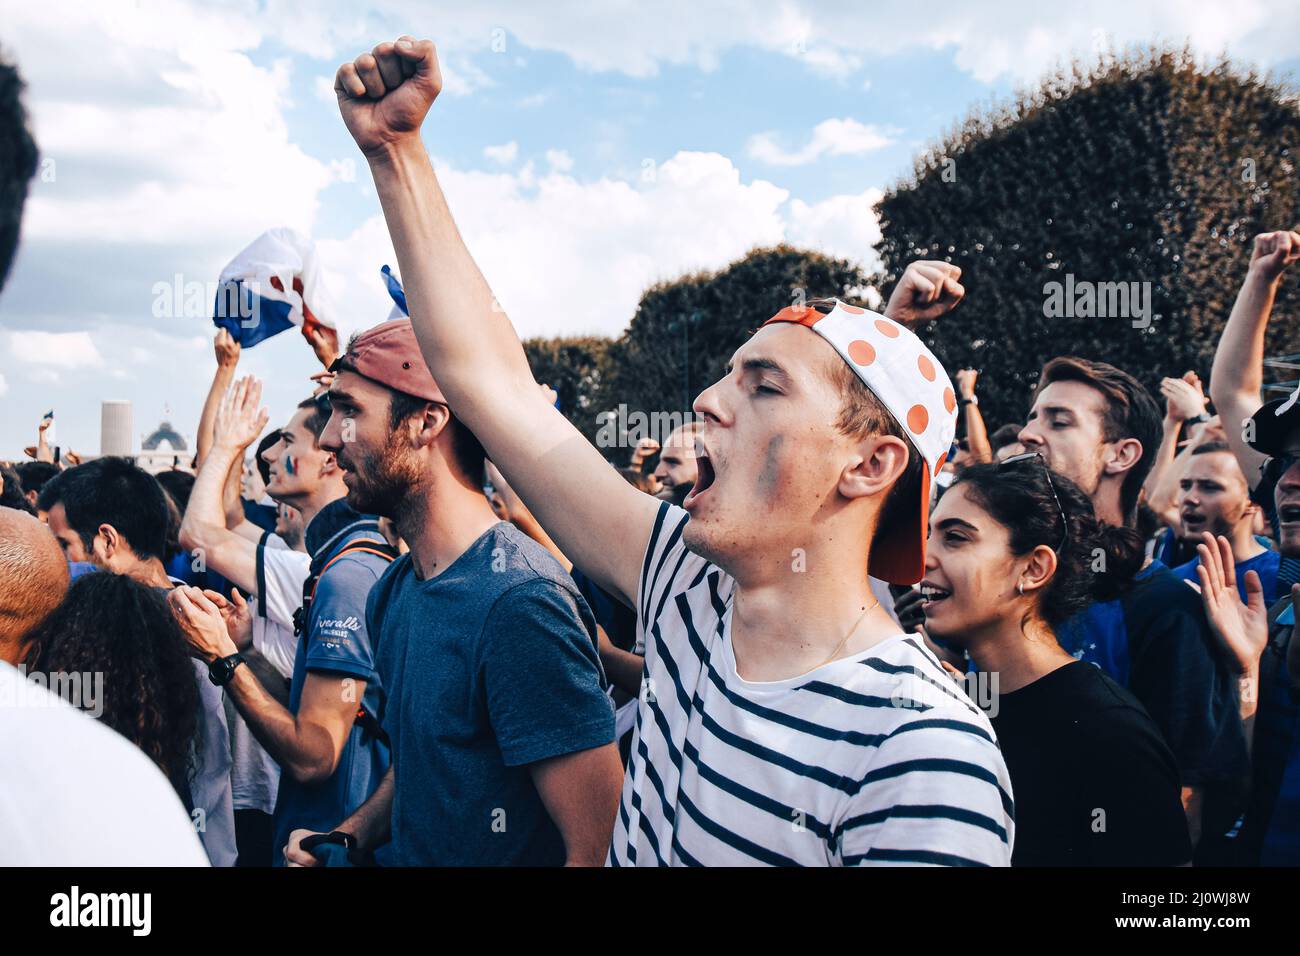 PARIS, FRANCE - 15 JUILLET 2018 : ambiance de fan après la victoire de l'équipe française de football contre la Croatie, lors de la coupe du monde 2018. Banque D'Images